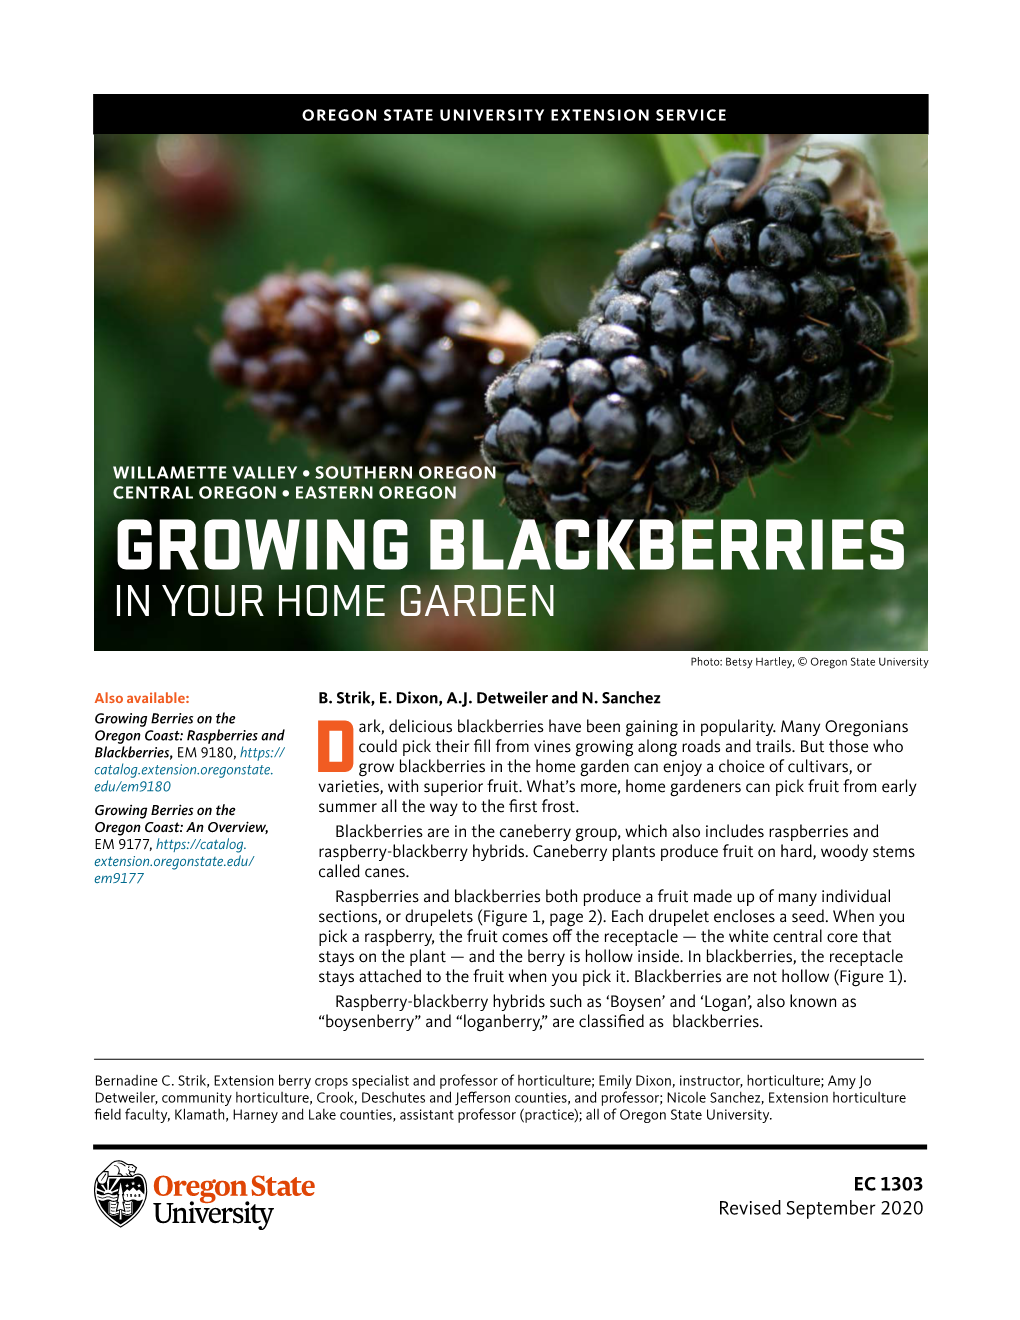 Growing Blackberries in Your Home Garden